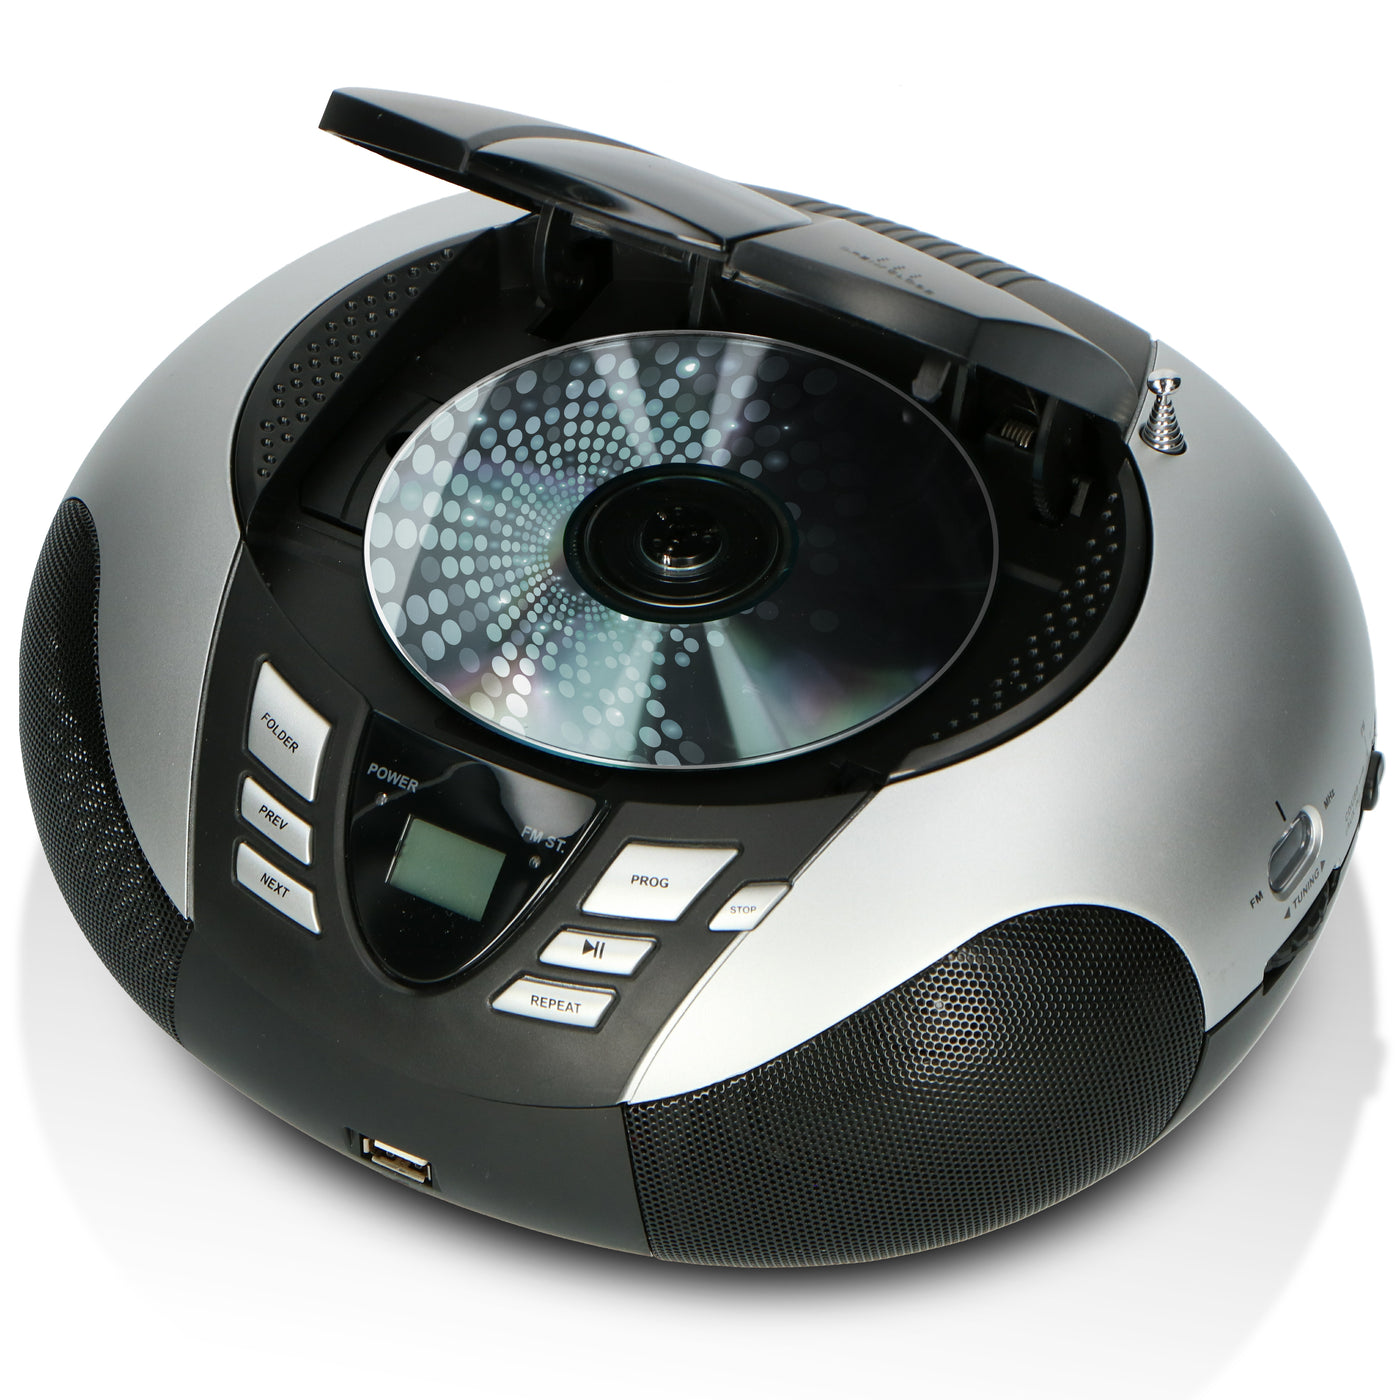 Lenco SCD-37 USB Silver - Radio FM et lecteur CD/USB portable - Argent